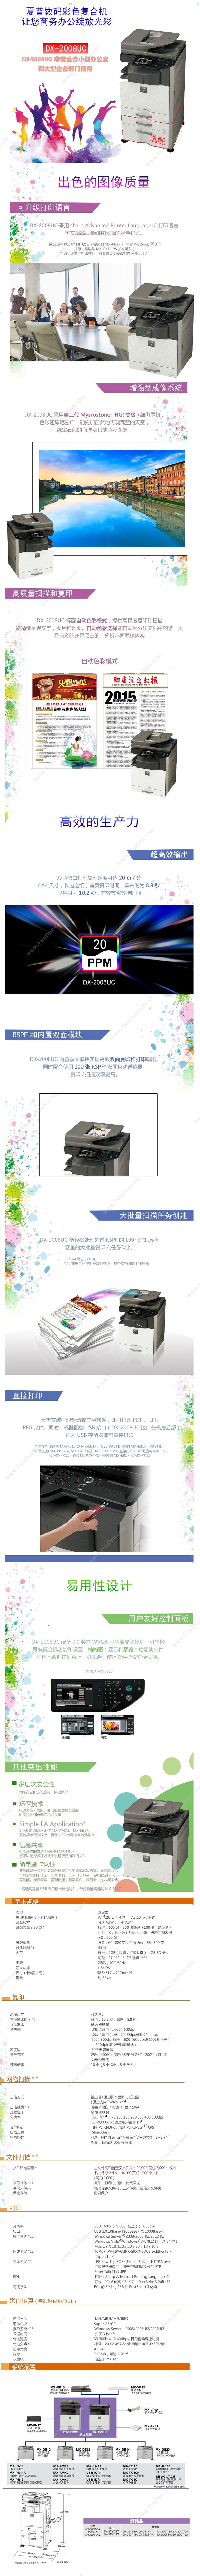 夏普 Sharp DX-2008UC 彩色数码复印打印复合机 A3 彩色 主机标配双面输稿器双层纸盒 A3彩色喷墨多功能一体机